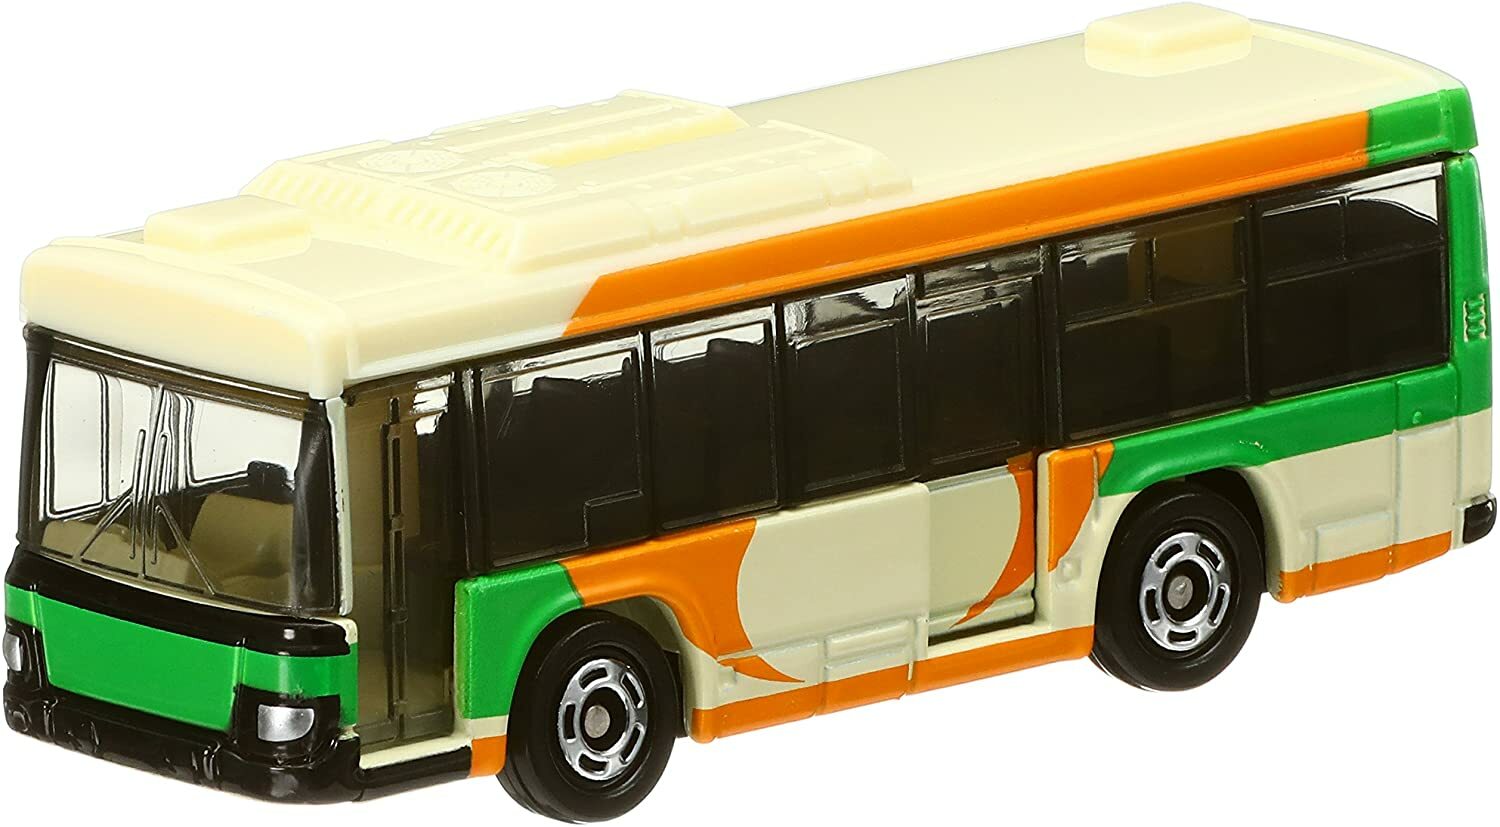 タカラトミー TAKARA TOMY トミカ No.20 いすゞ エルガ 都営バス (箱) はたらく車 ギフト おもちゃ 玩具 小学生 男の子